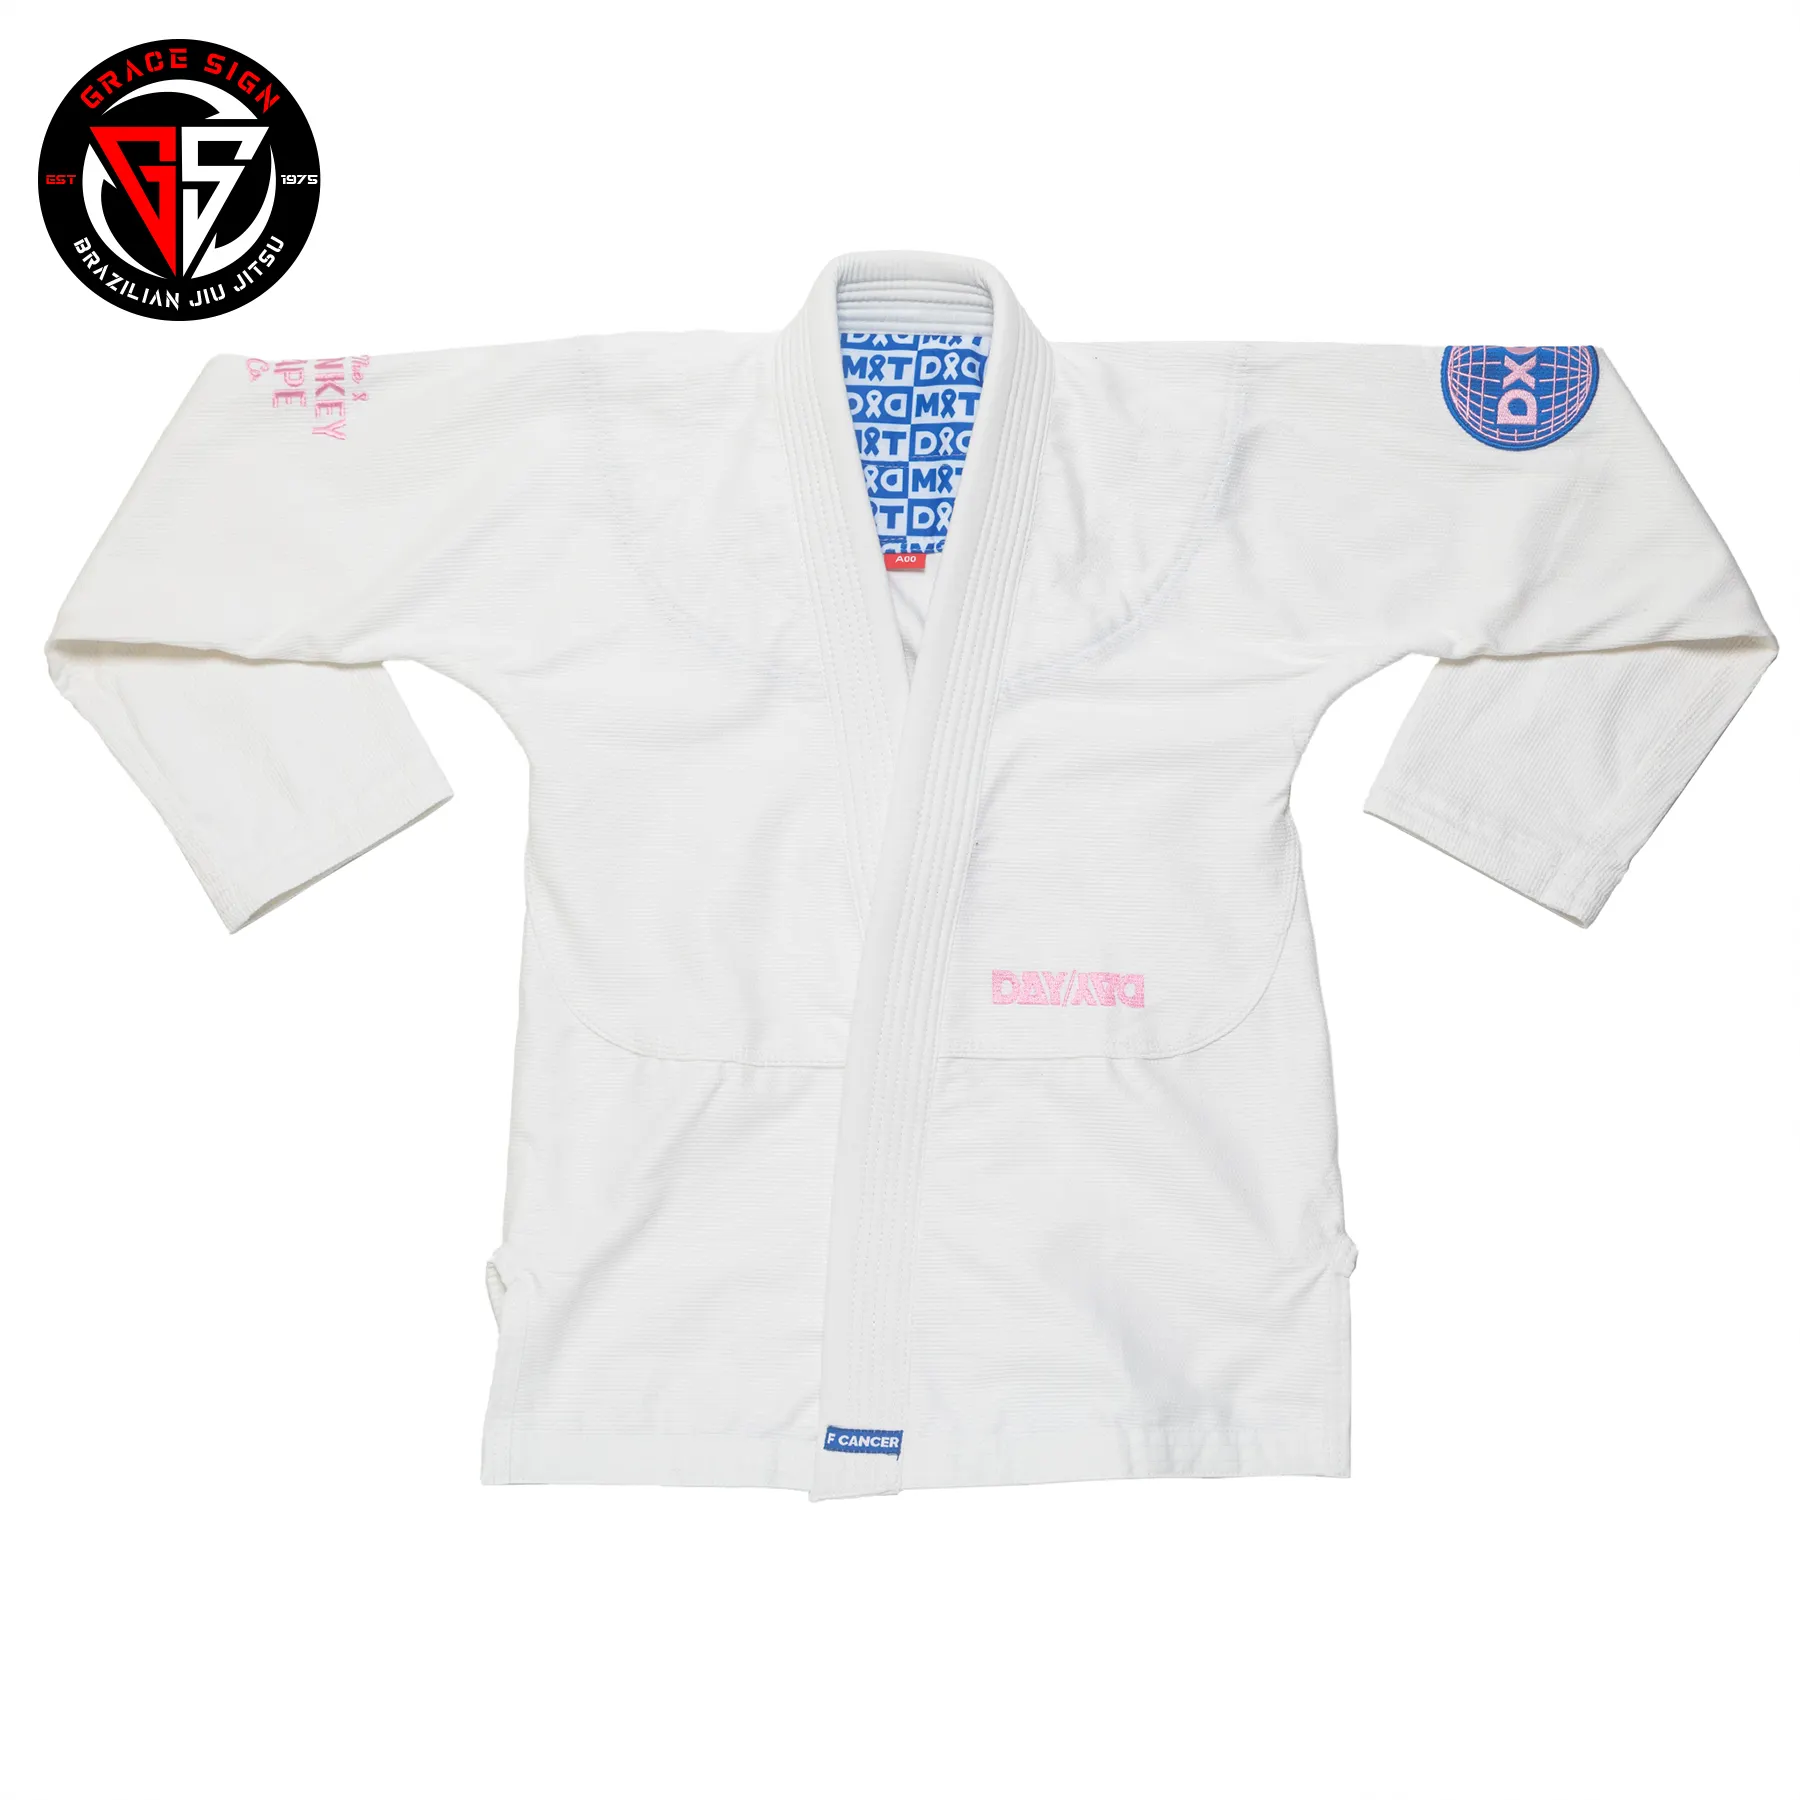 Art martial de qualité supérieure Bjj GI jiu jitsu uniforme/kimono bjj sur mesure Judo Gis JKimono Judo Gis Jiu Jitsu Gi